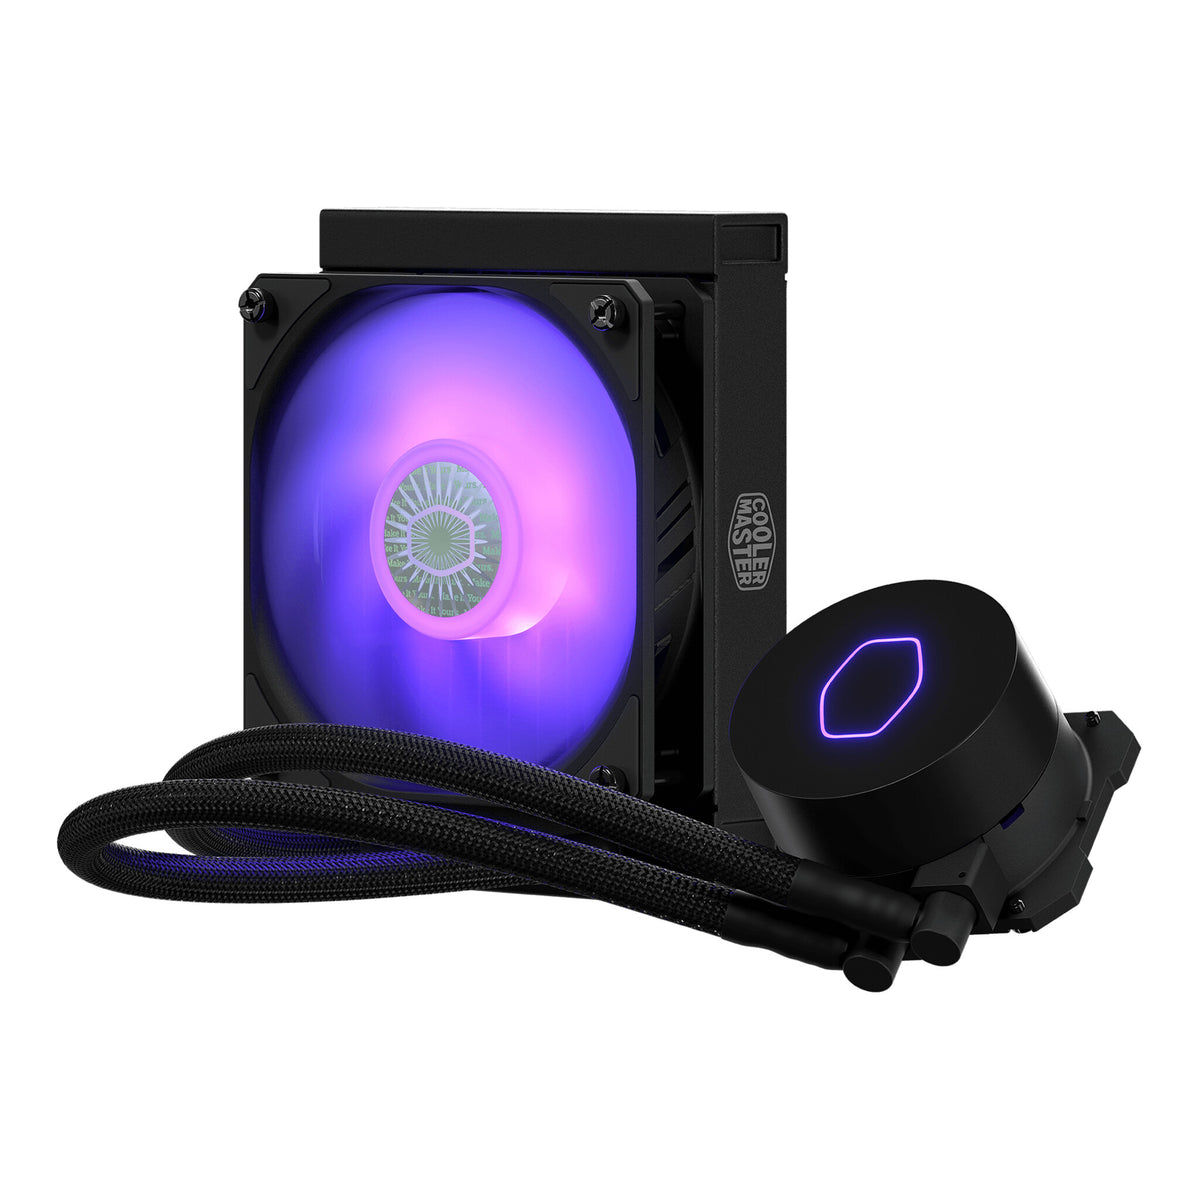 Cooler Master MasterLiquid ML120L V2 RGB - All-in-one Liquid CPU Cooler in Black